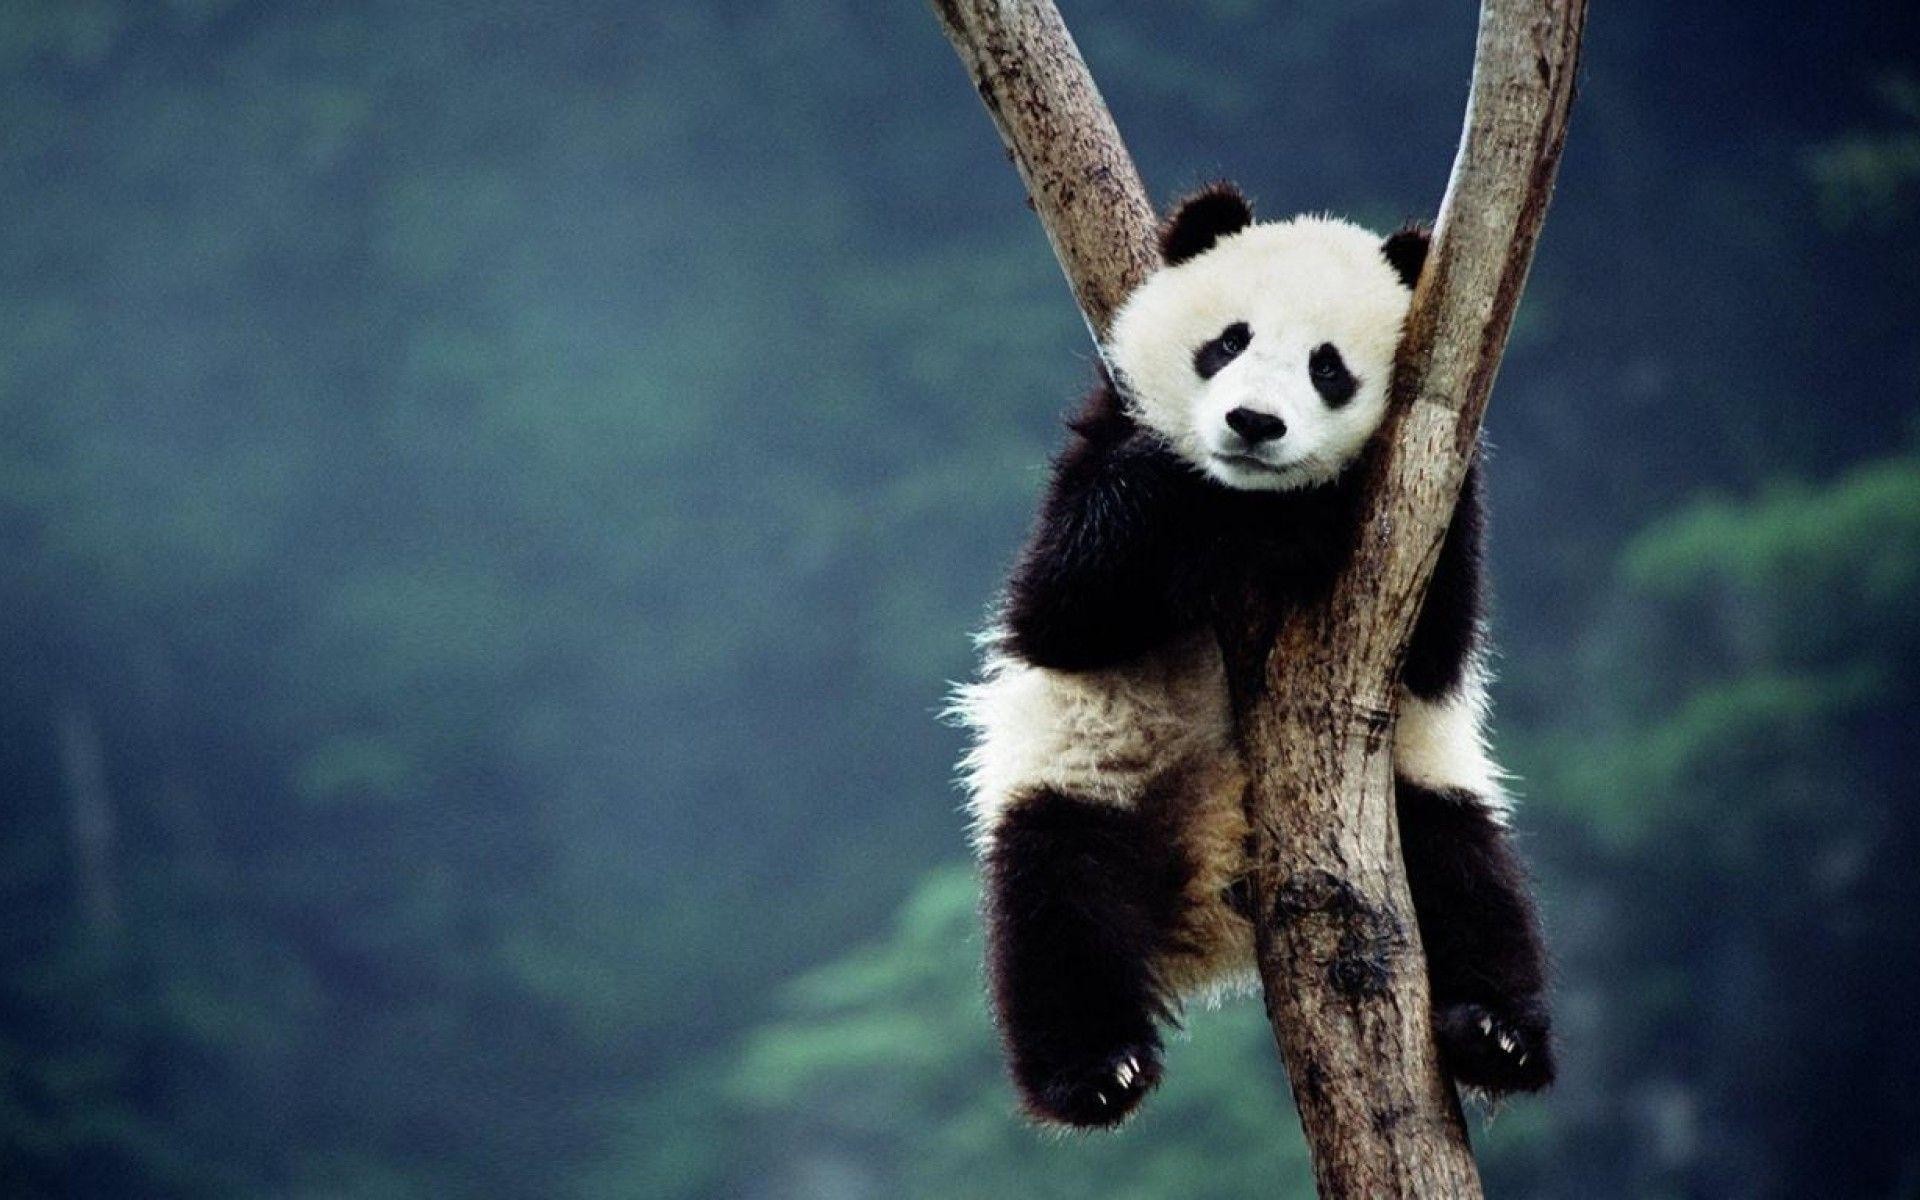 Gấu trúc panda luôn là đề tài hấp dẫn để làm hình nền. Tận hưởng khung cảnh nhẹ nhàng và dễ chịu với những hình ảnh gấu trúc panda đặc biệt này trên màn hình của bạn.